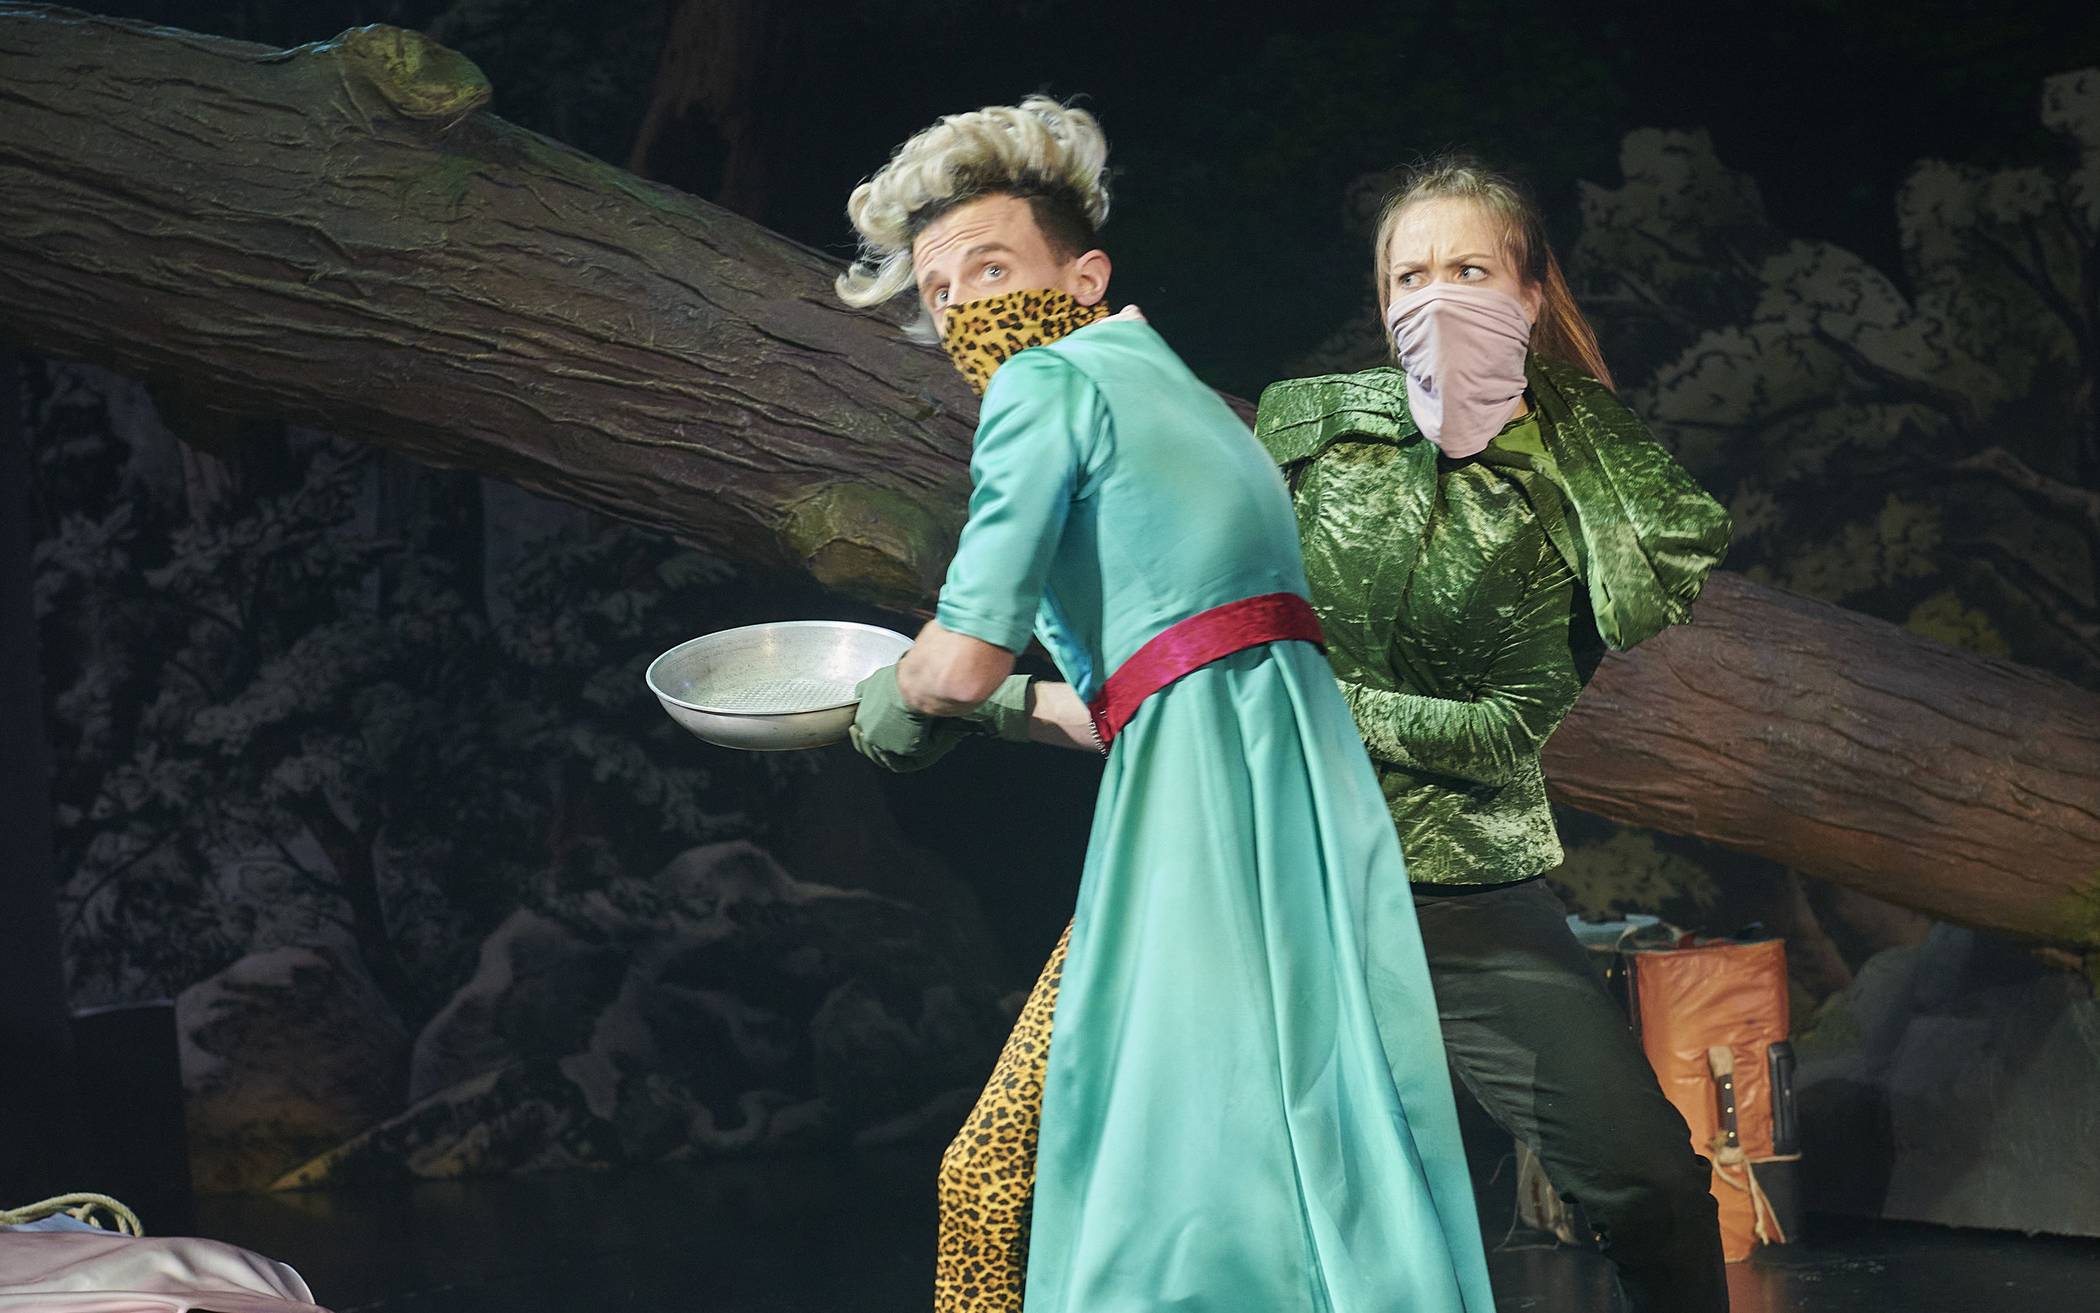  Die beiden halten fest zusammen auf ihrer Suche nach dem legendären Robin Hood: Prinzessin Robin von Locksley (Annou Reiners) und der Taschendieb Mario (Martin Petschan) – bei Annäherung übrigens stets inklusive elegantem Corona-Mund-Nase-Schutz.  